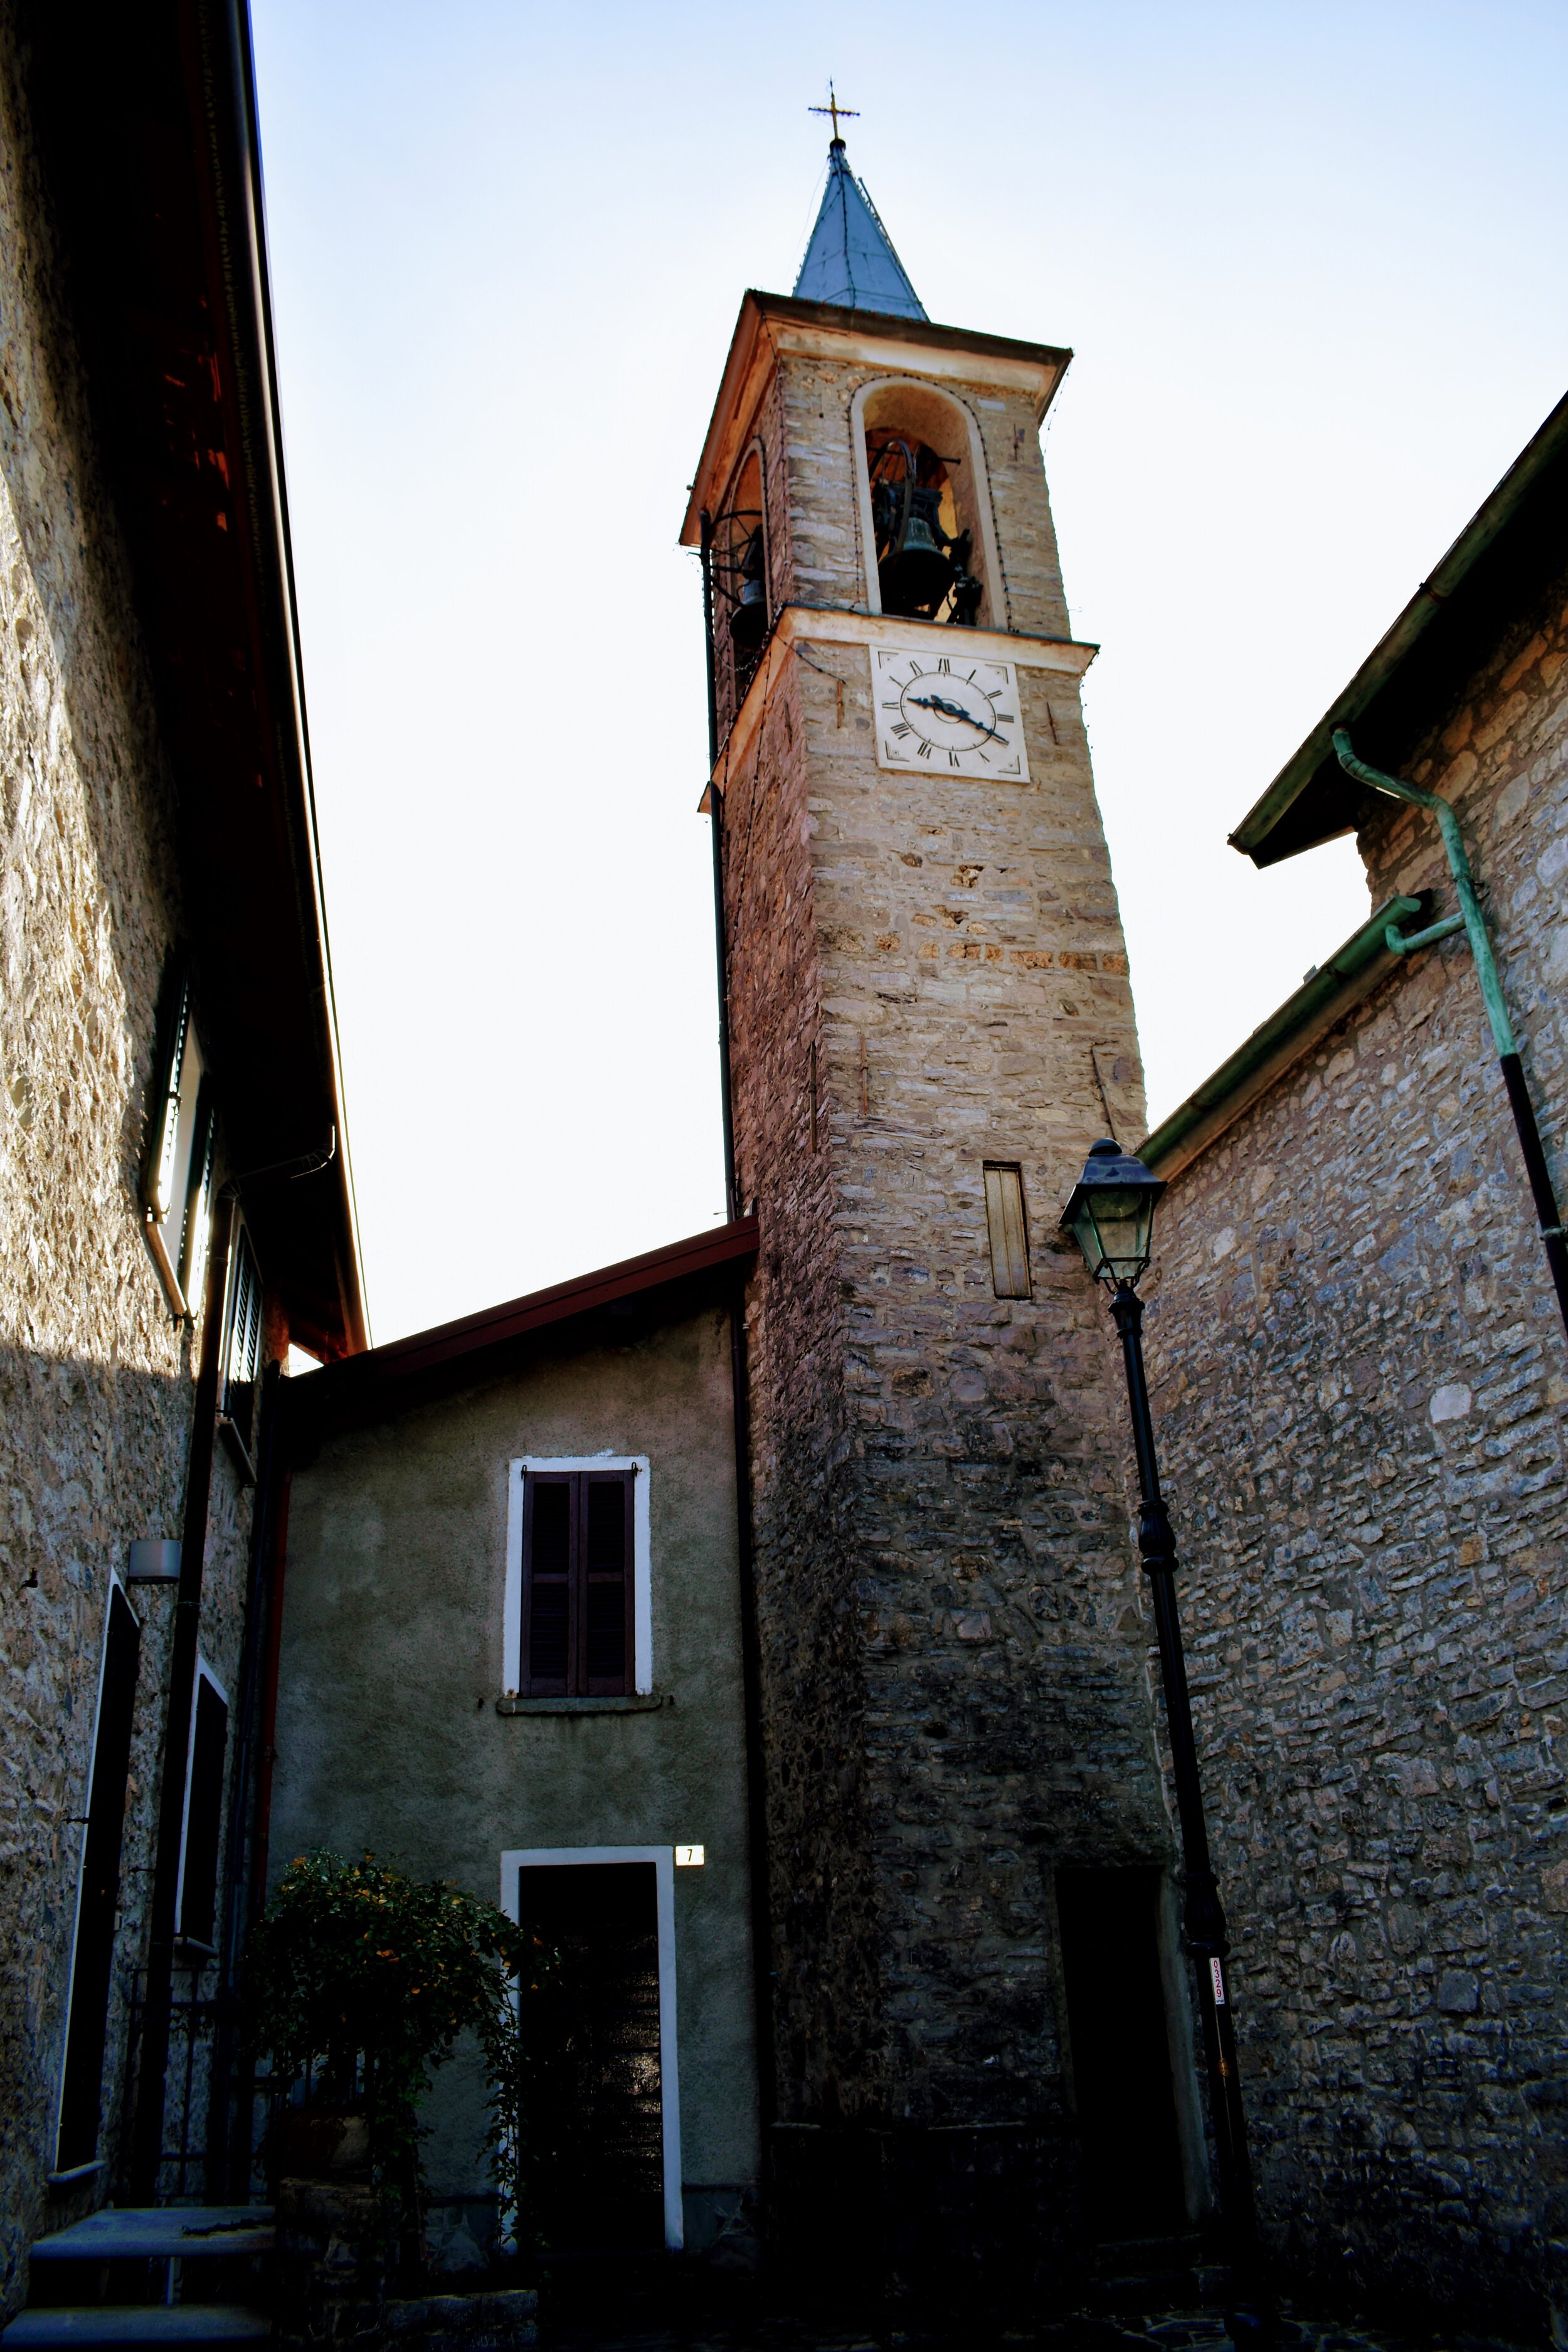 Walk up to Castello di Vezio